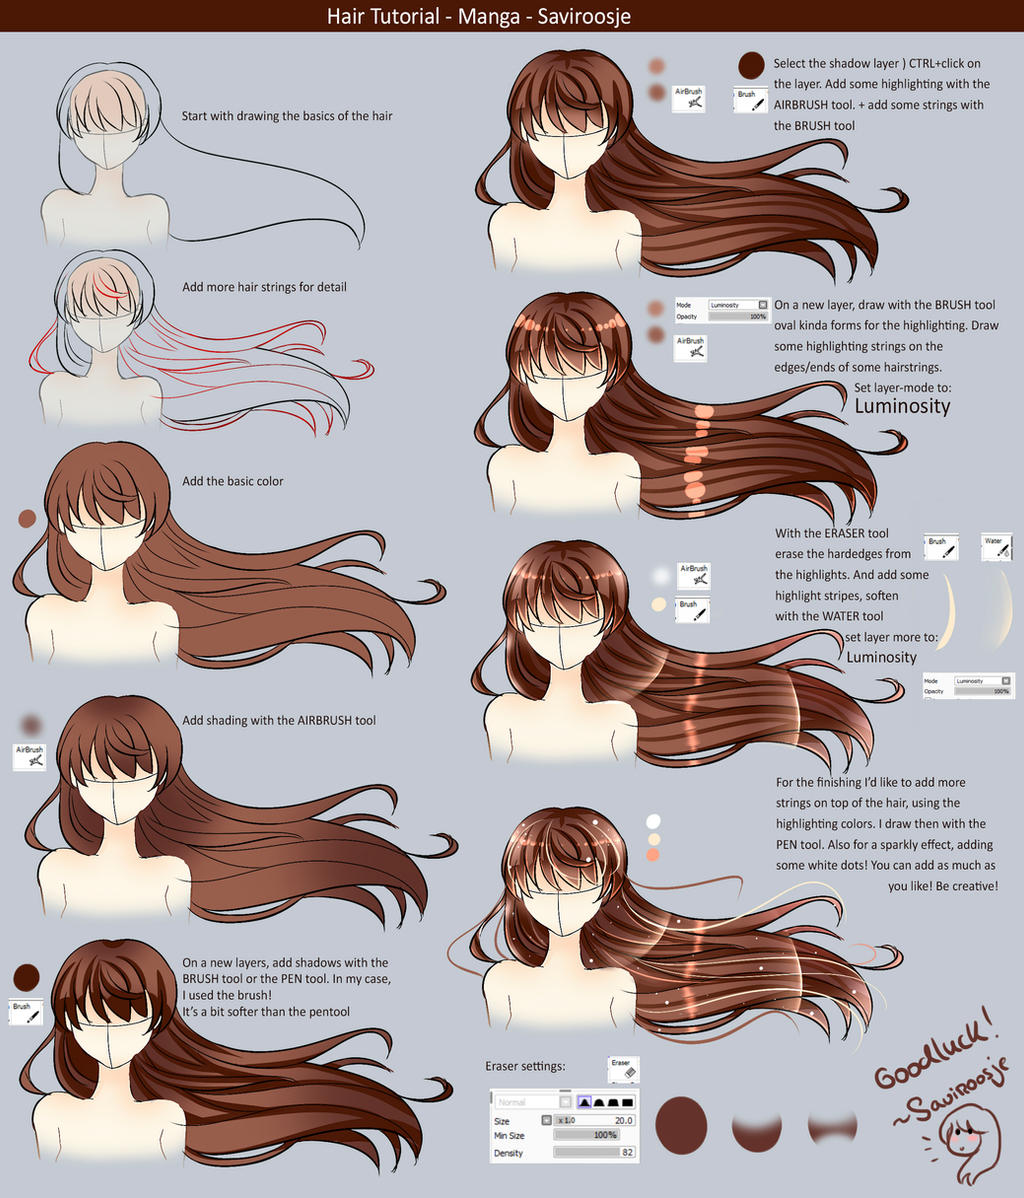 Anime Hair Tutorial - TheSalonGuy 